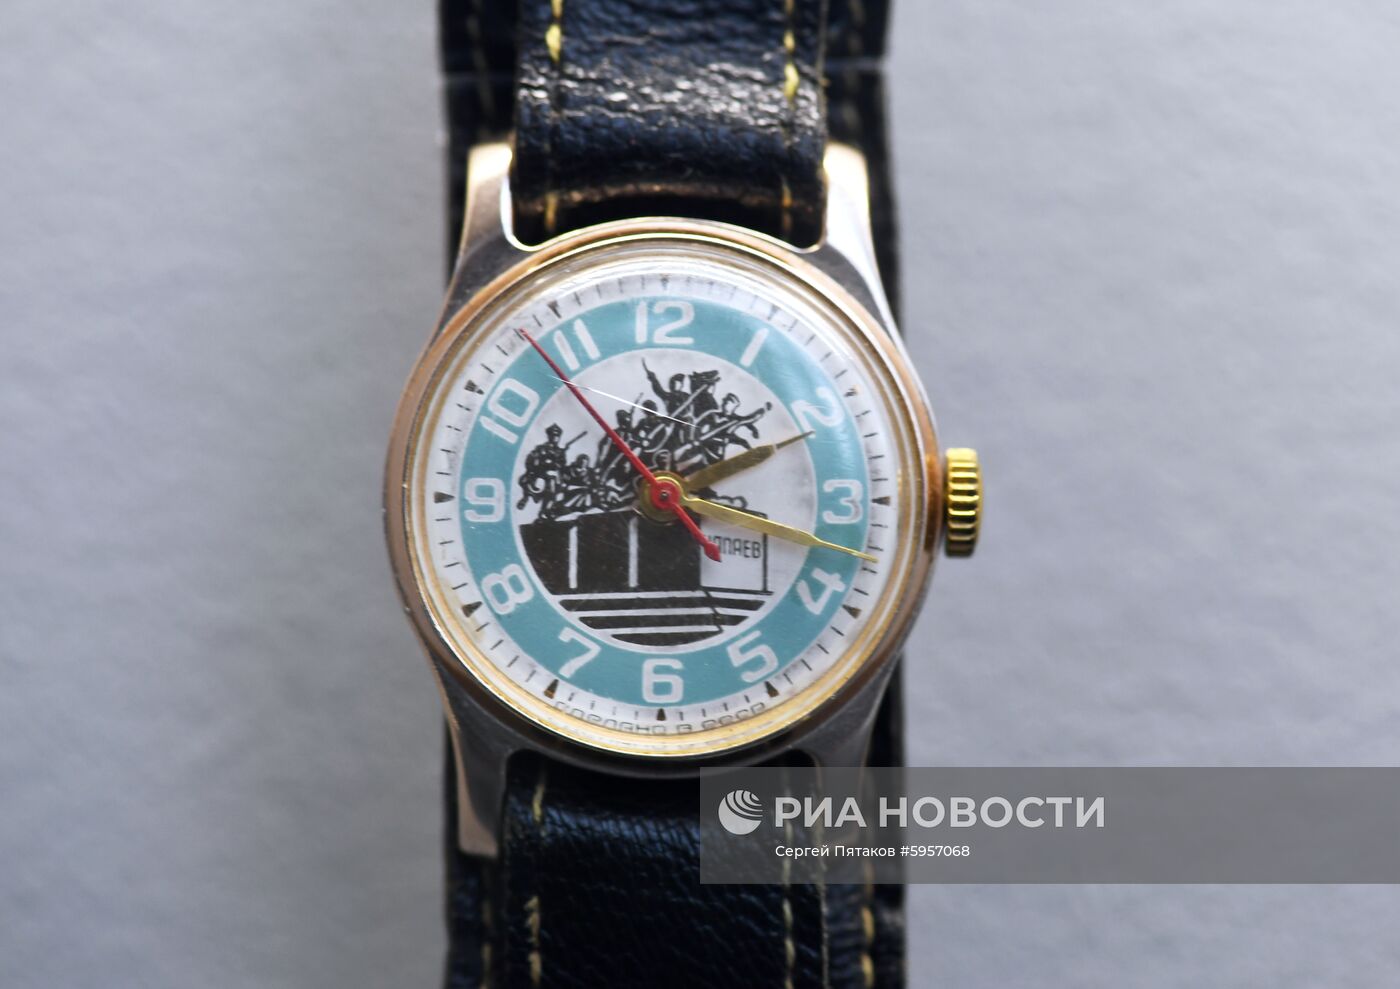 Выставка часов "Время и космос" на ВДНХ